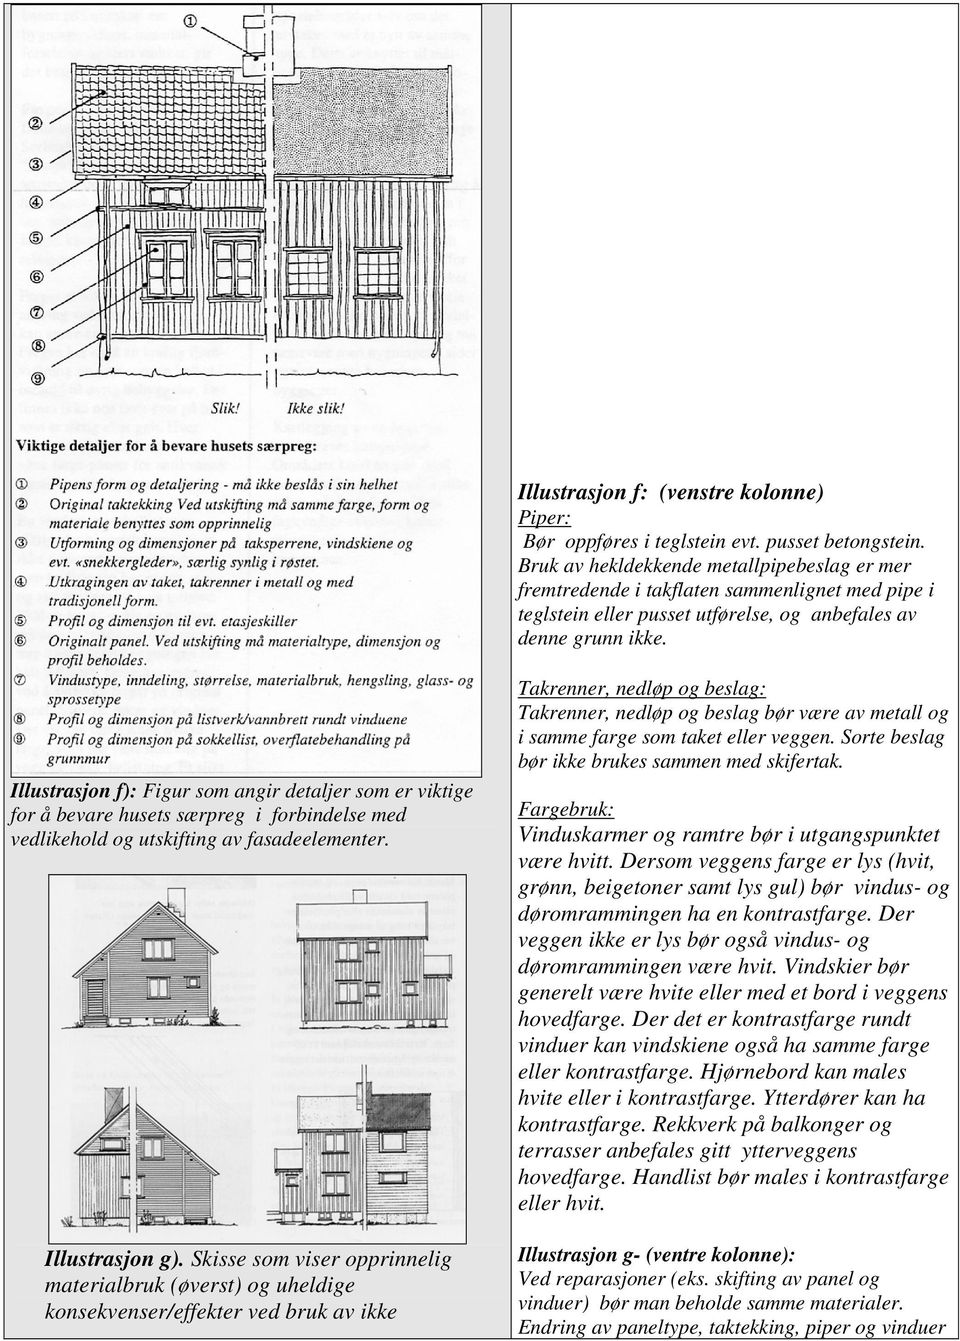 Illustrasjon f): Figur som angir detaljer som er viktige for å bevare husets særpreg i forbindelse med vedlikehold og utskifting av fasadeelementer. Illustrasjon g).